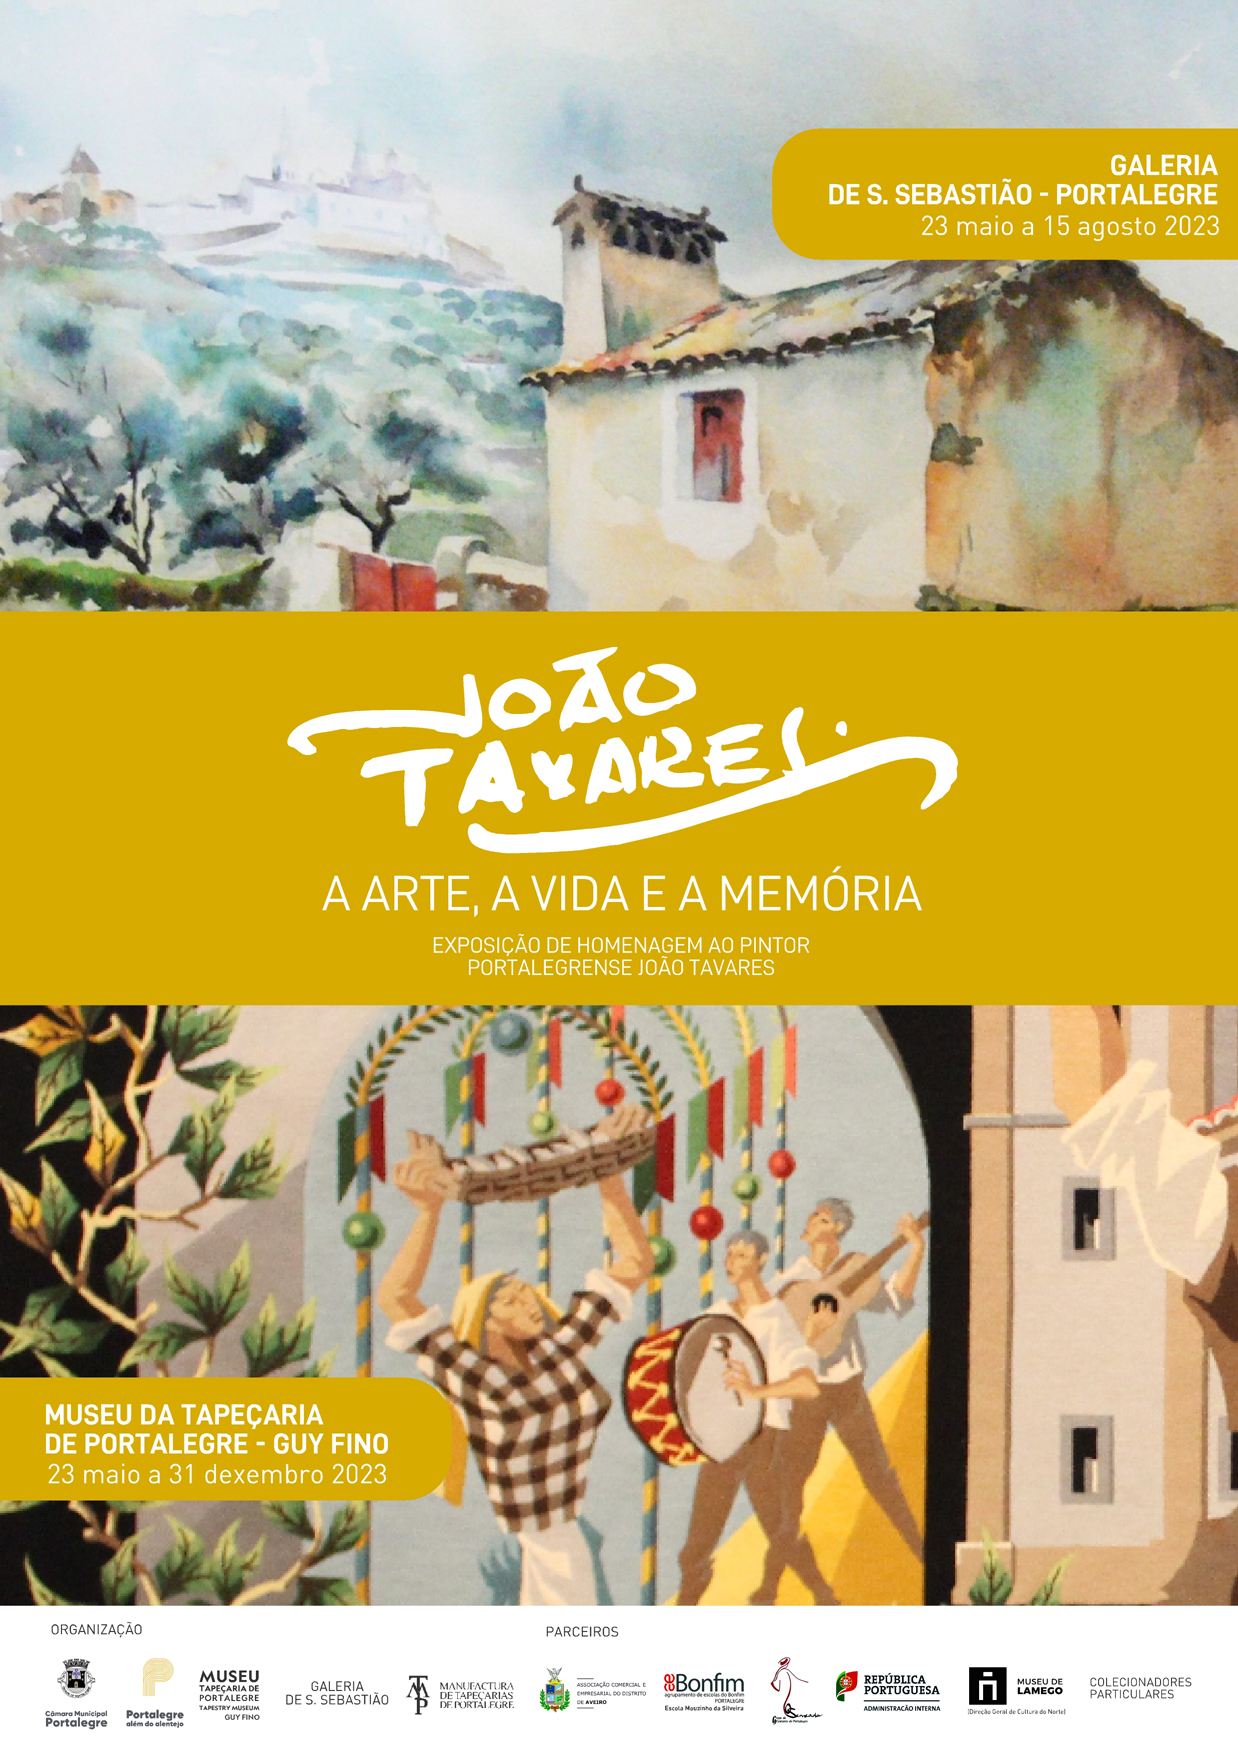 João Tavares: A Arte, a Vida e a Memória